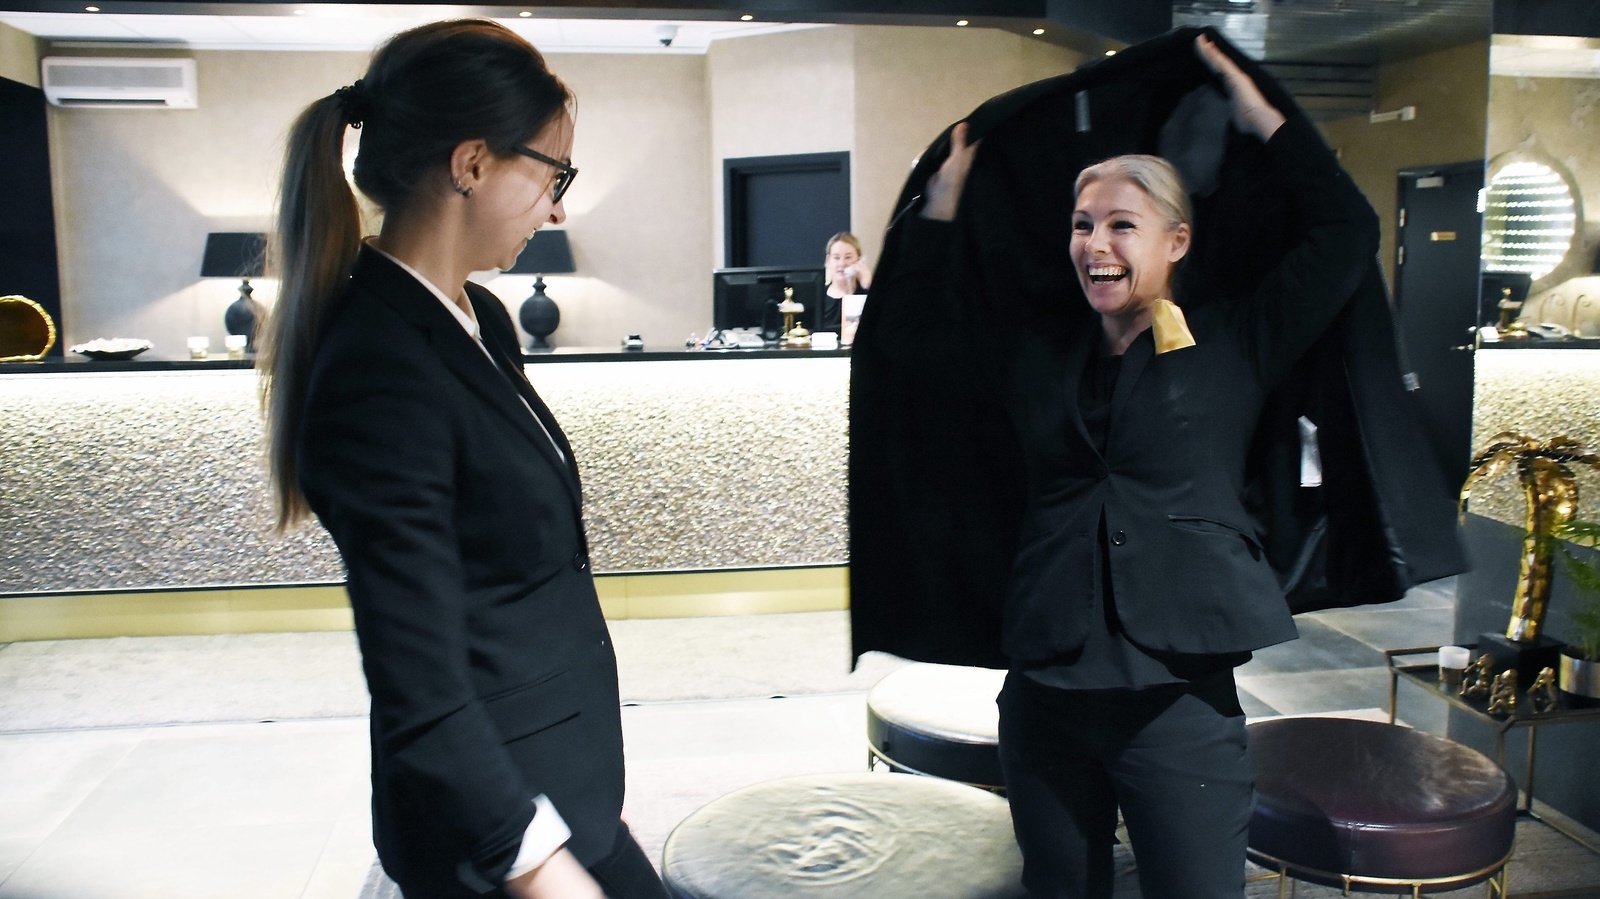 Statt arrangerar klädbytardagar i Hässleholm den 17 januari. Restaurangchefen Sabina Andersson och försäljningschefen Annika Branting har redan börjat prova. Foto: Helén Fingalsson